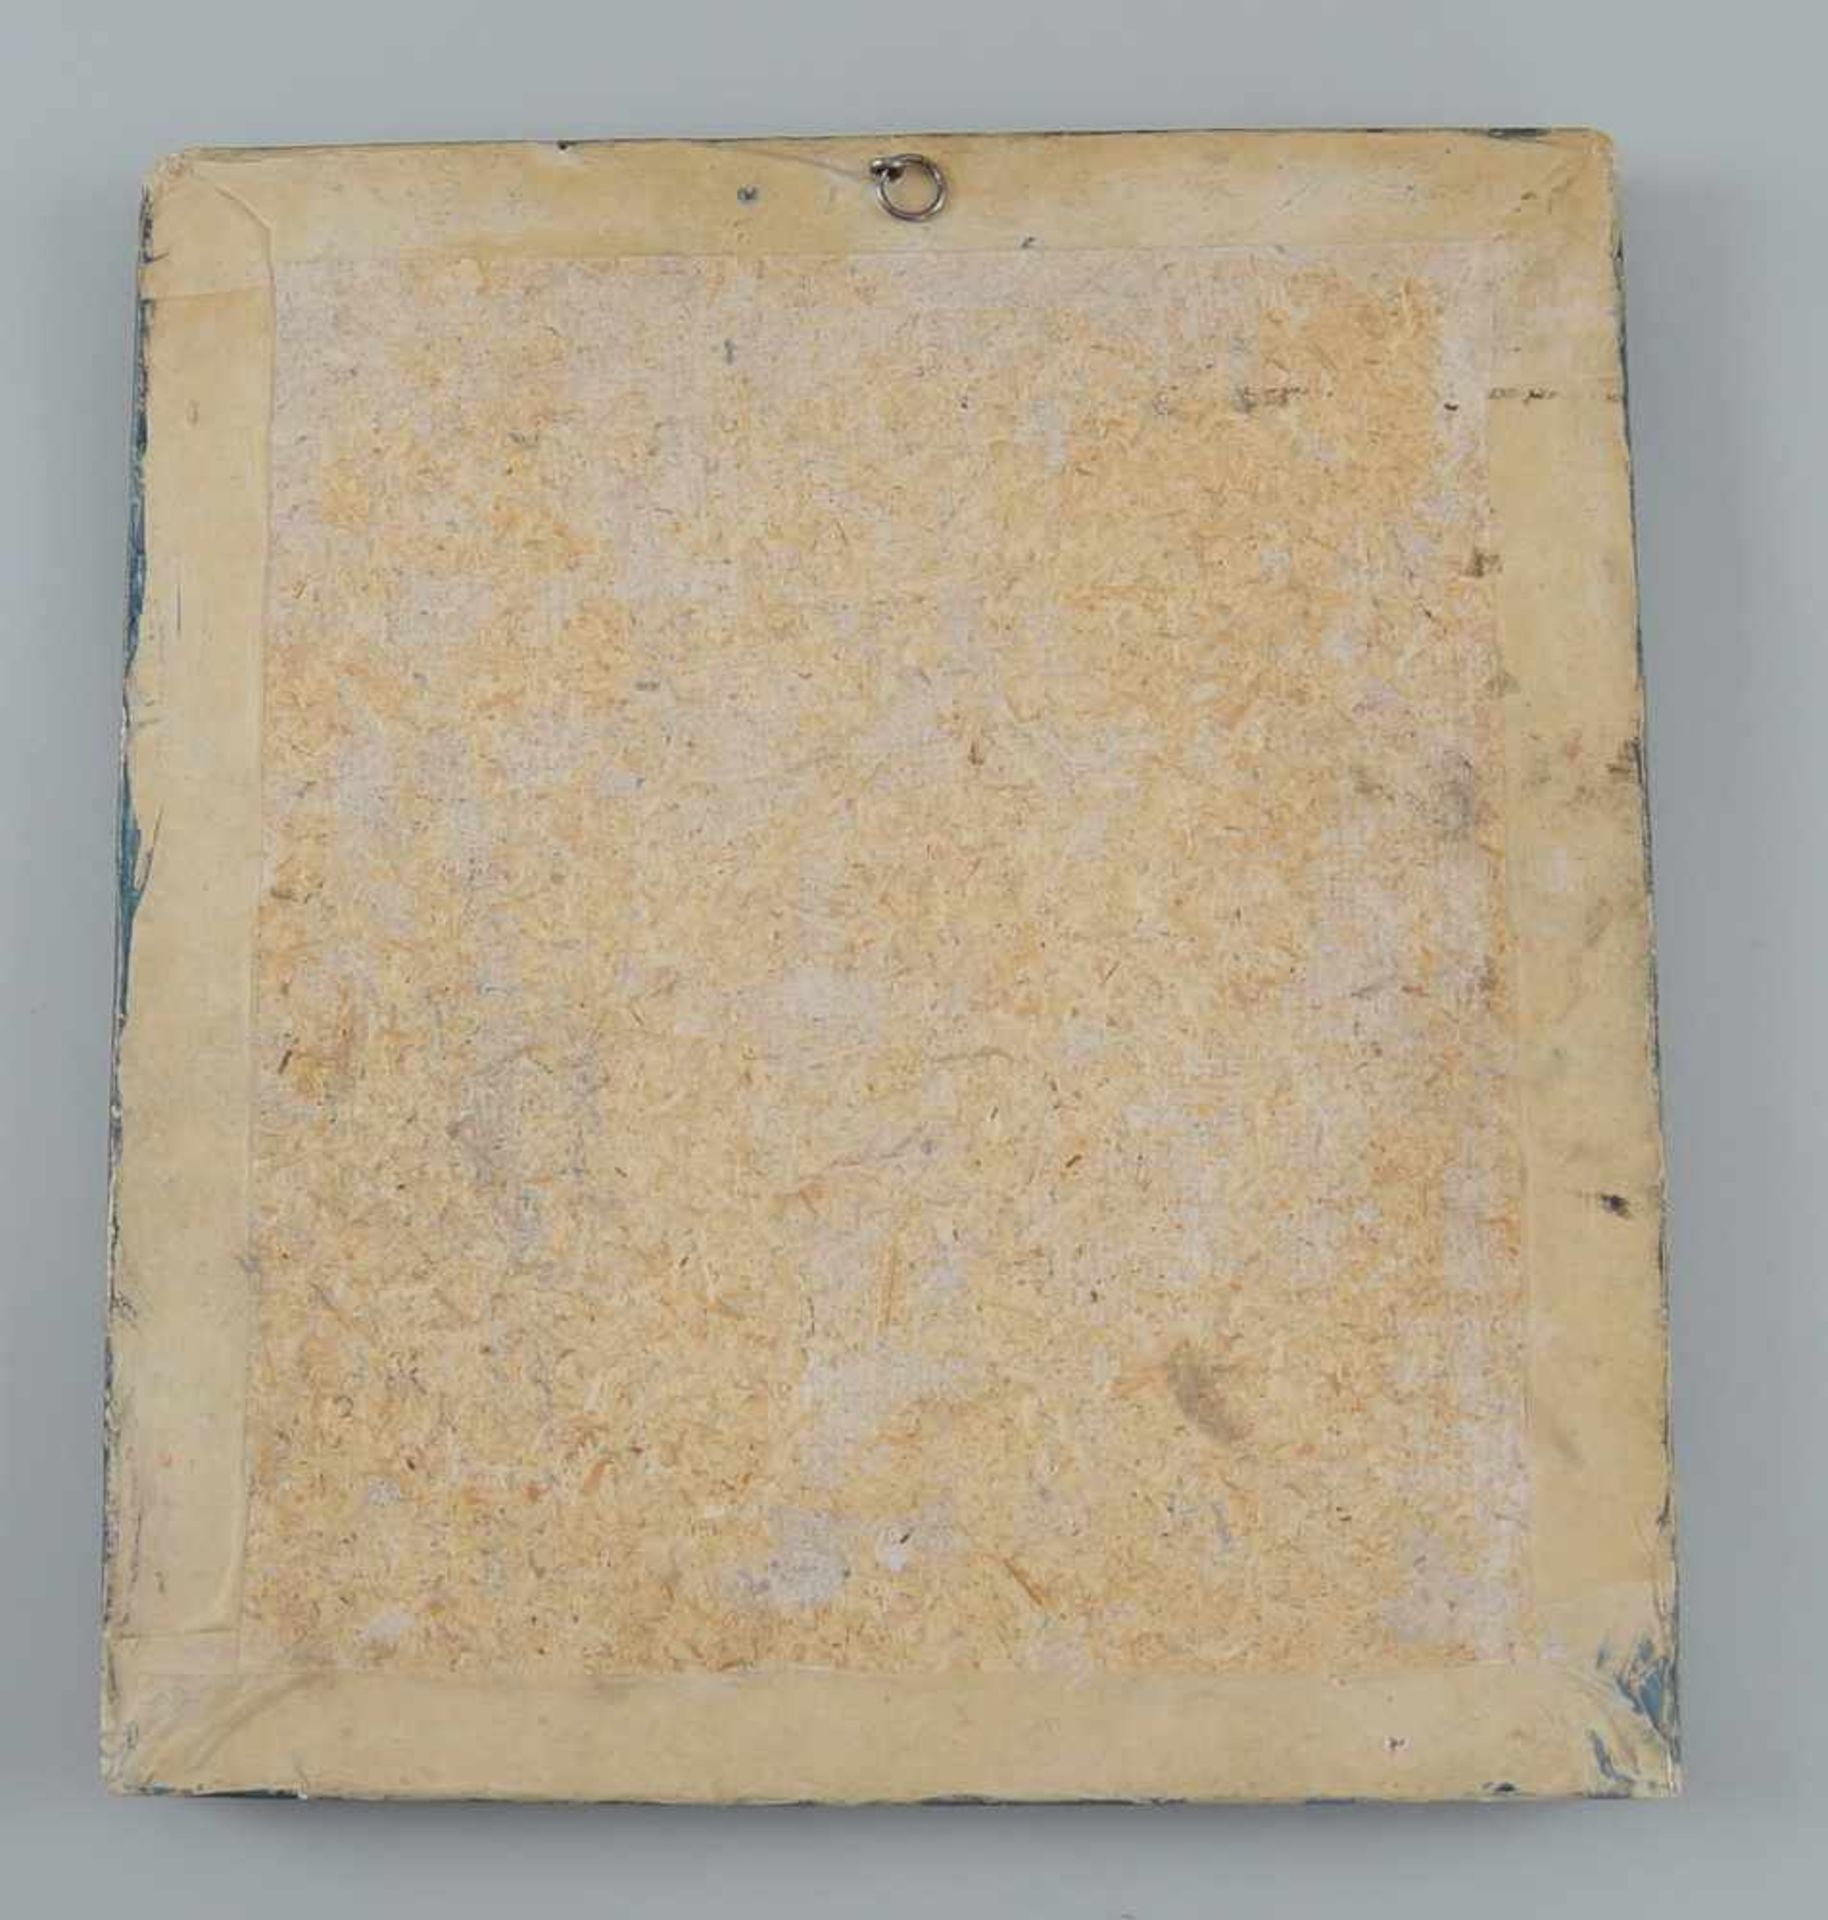 Votivtafel, Öl auf Leinwand, doubliert, gerahmt, datiert 1809, 34x31cm- - -24.00 % buyer's premium - Bild 5 aus 5